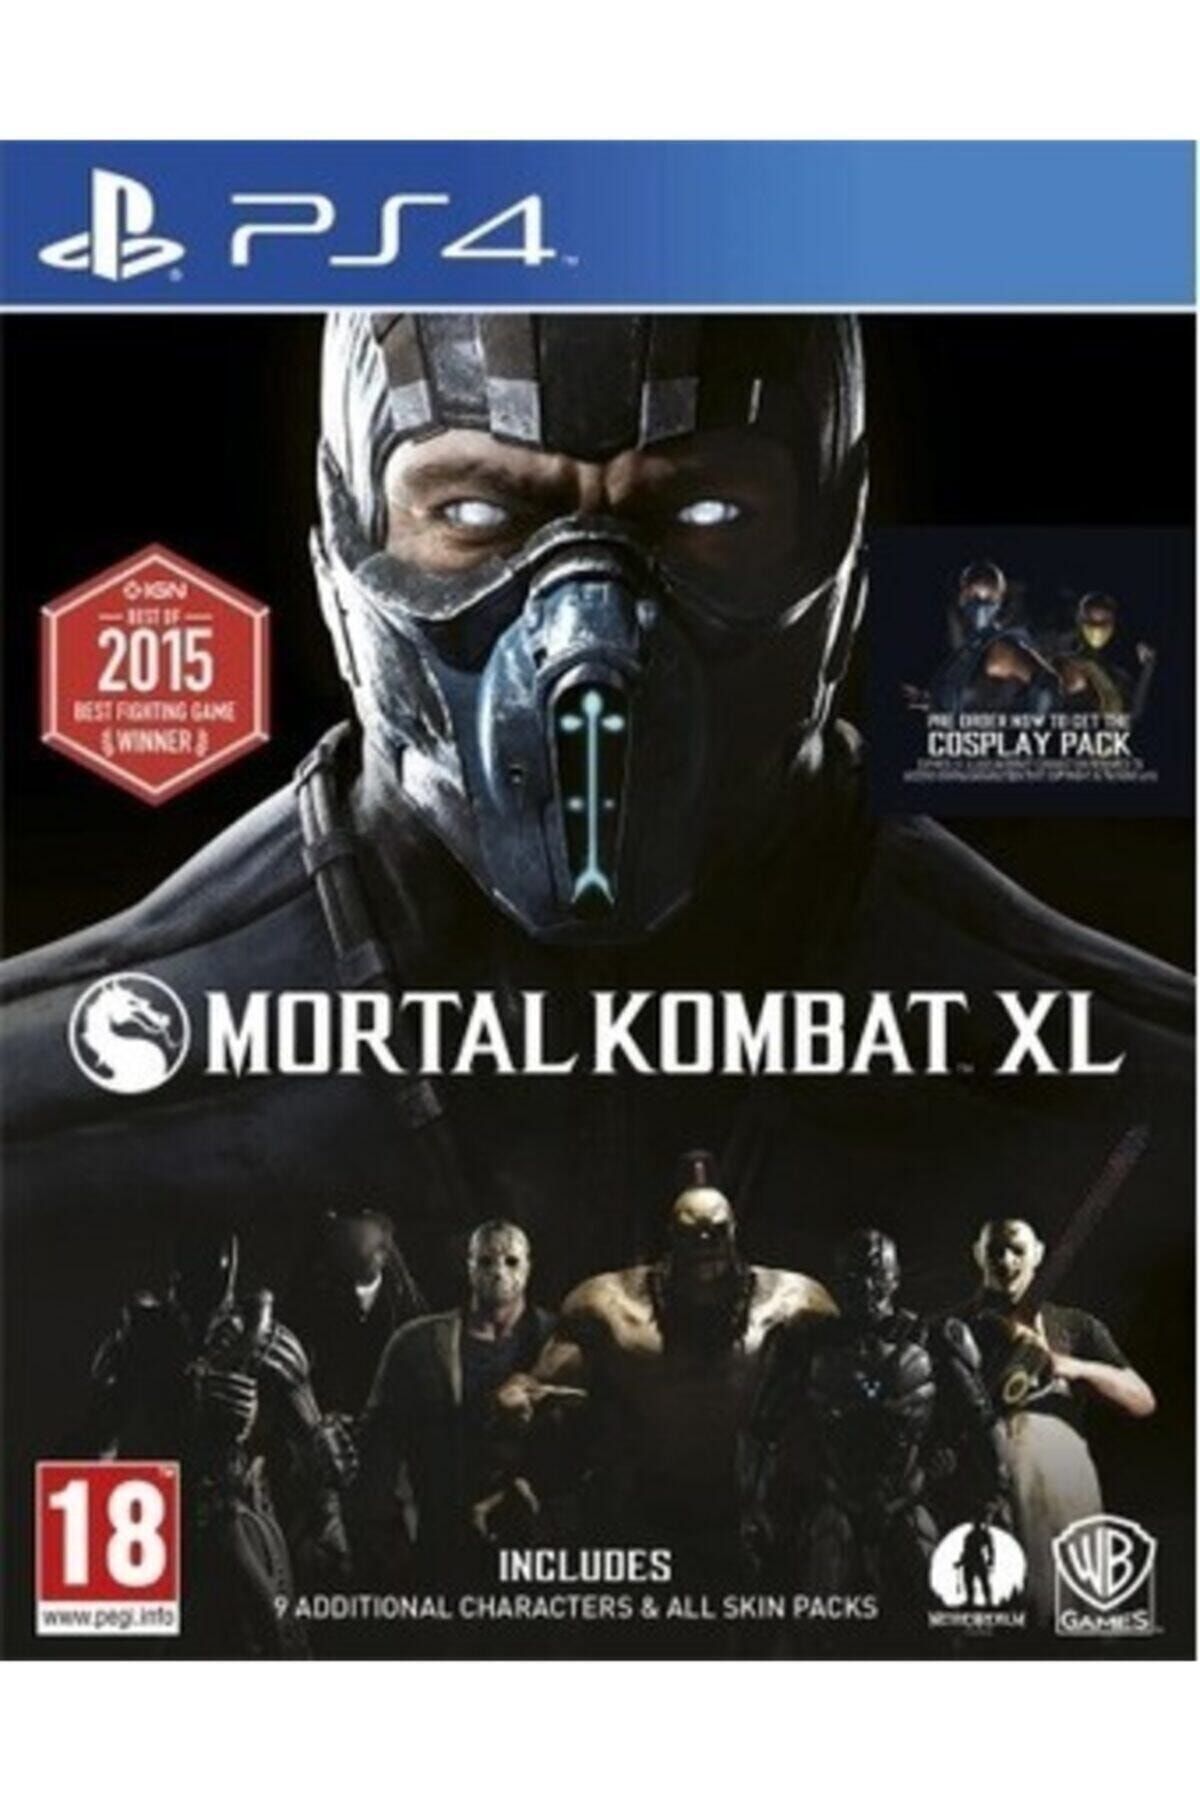 Wb Games Ps4 Mortal Kombat Xl